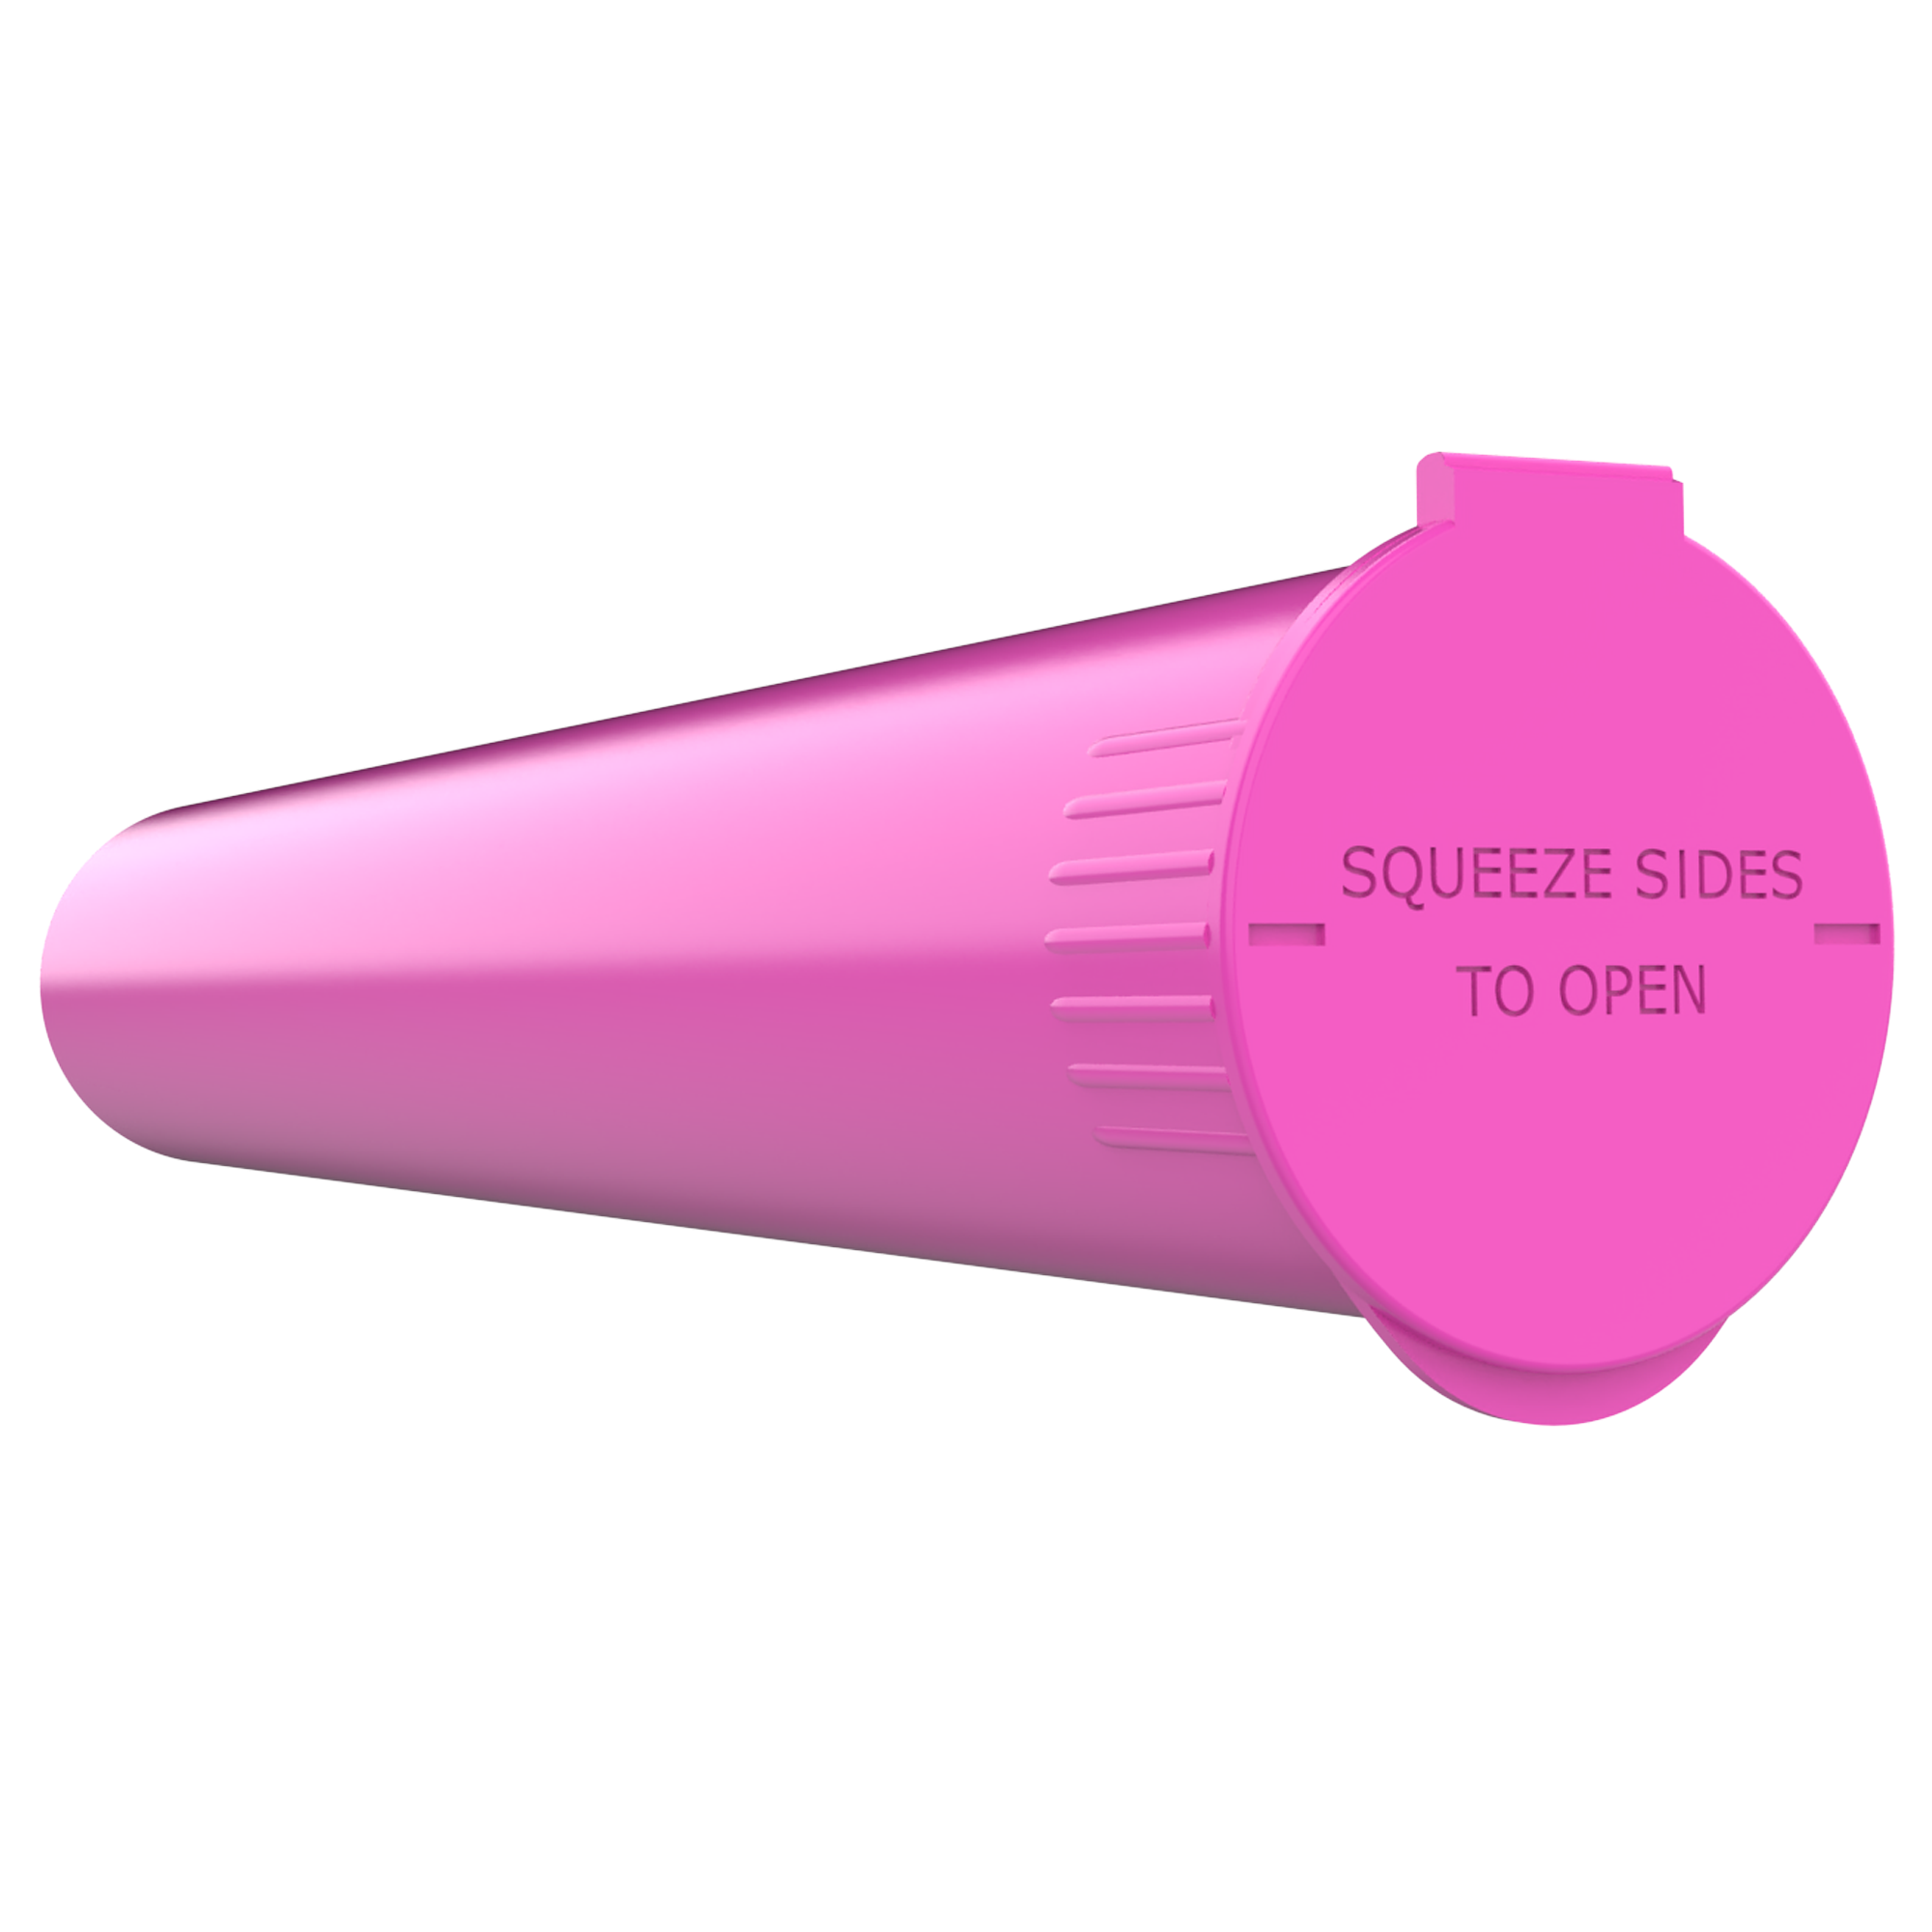 Loud Lock Child Resistant Pop Top Vials - Pink